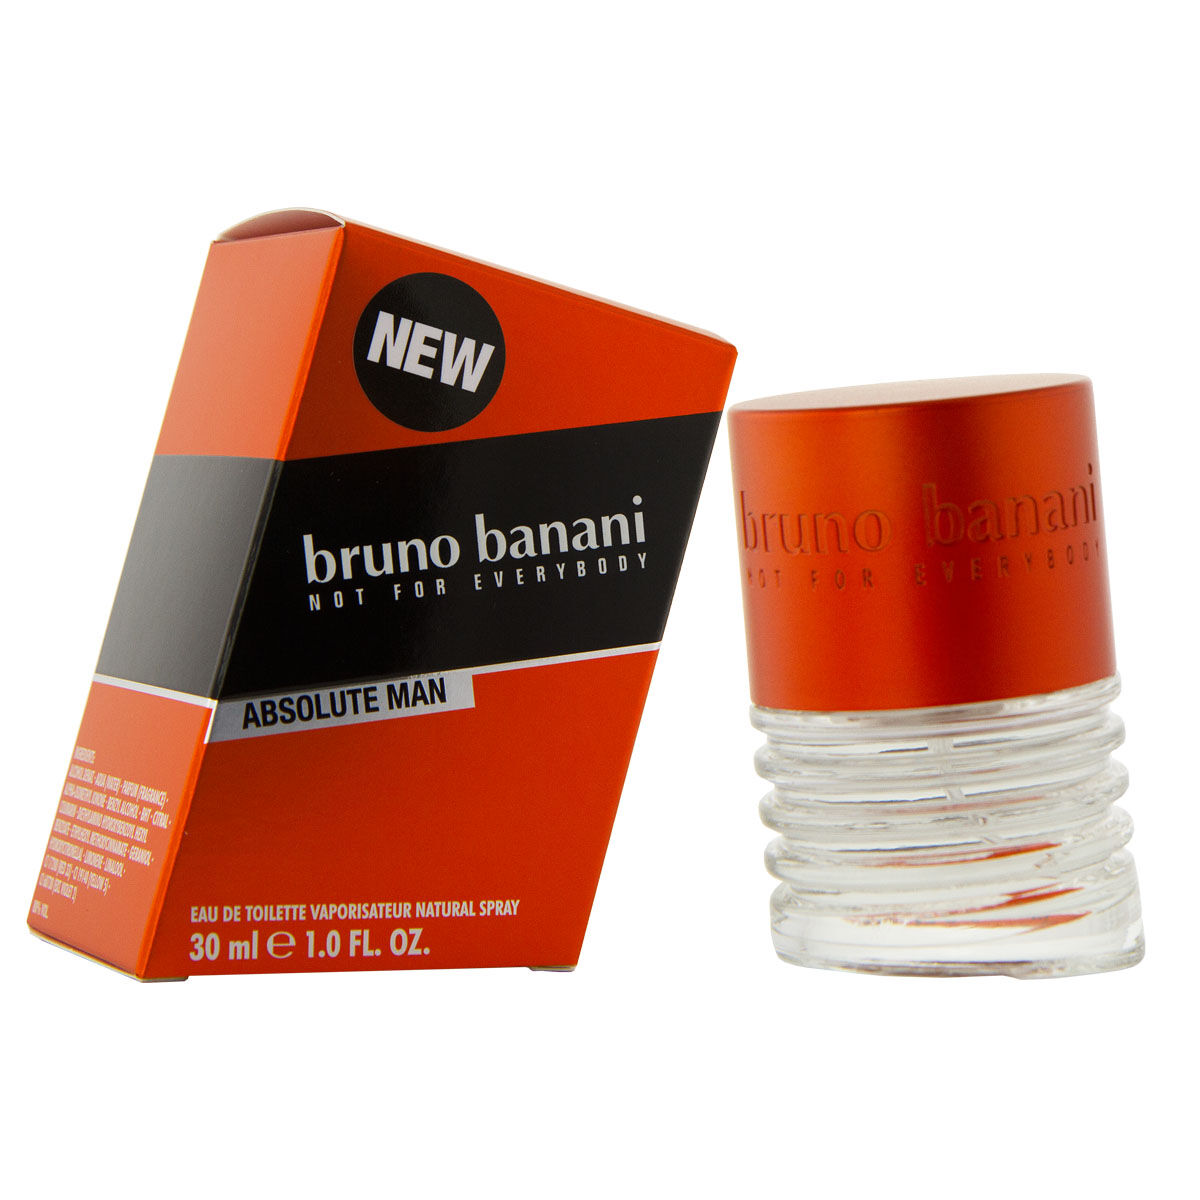 Parfum Homme Bruno Banani EDT Absolute Man 30 ml